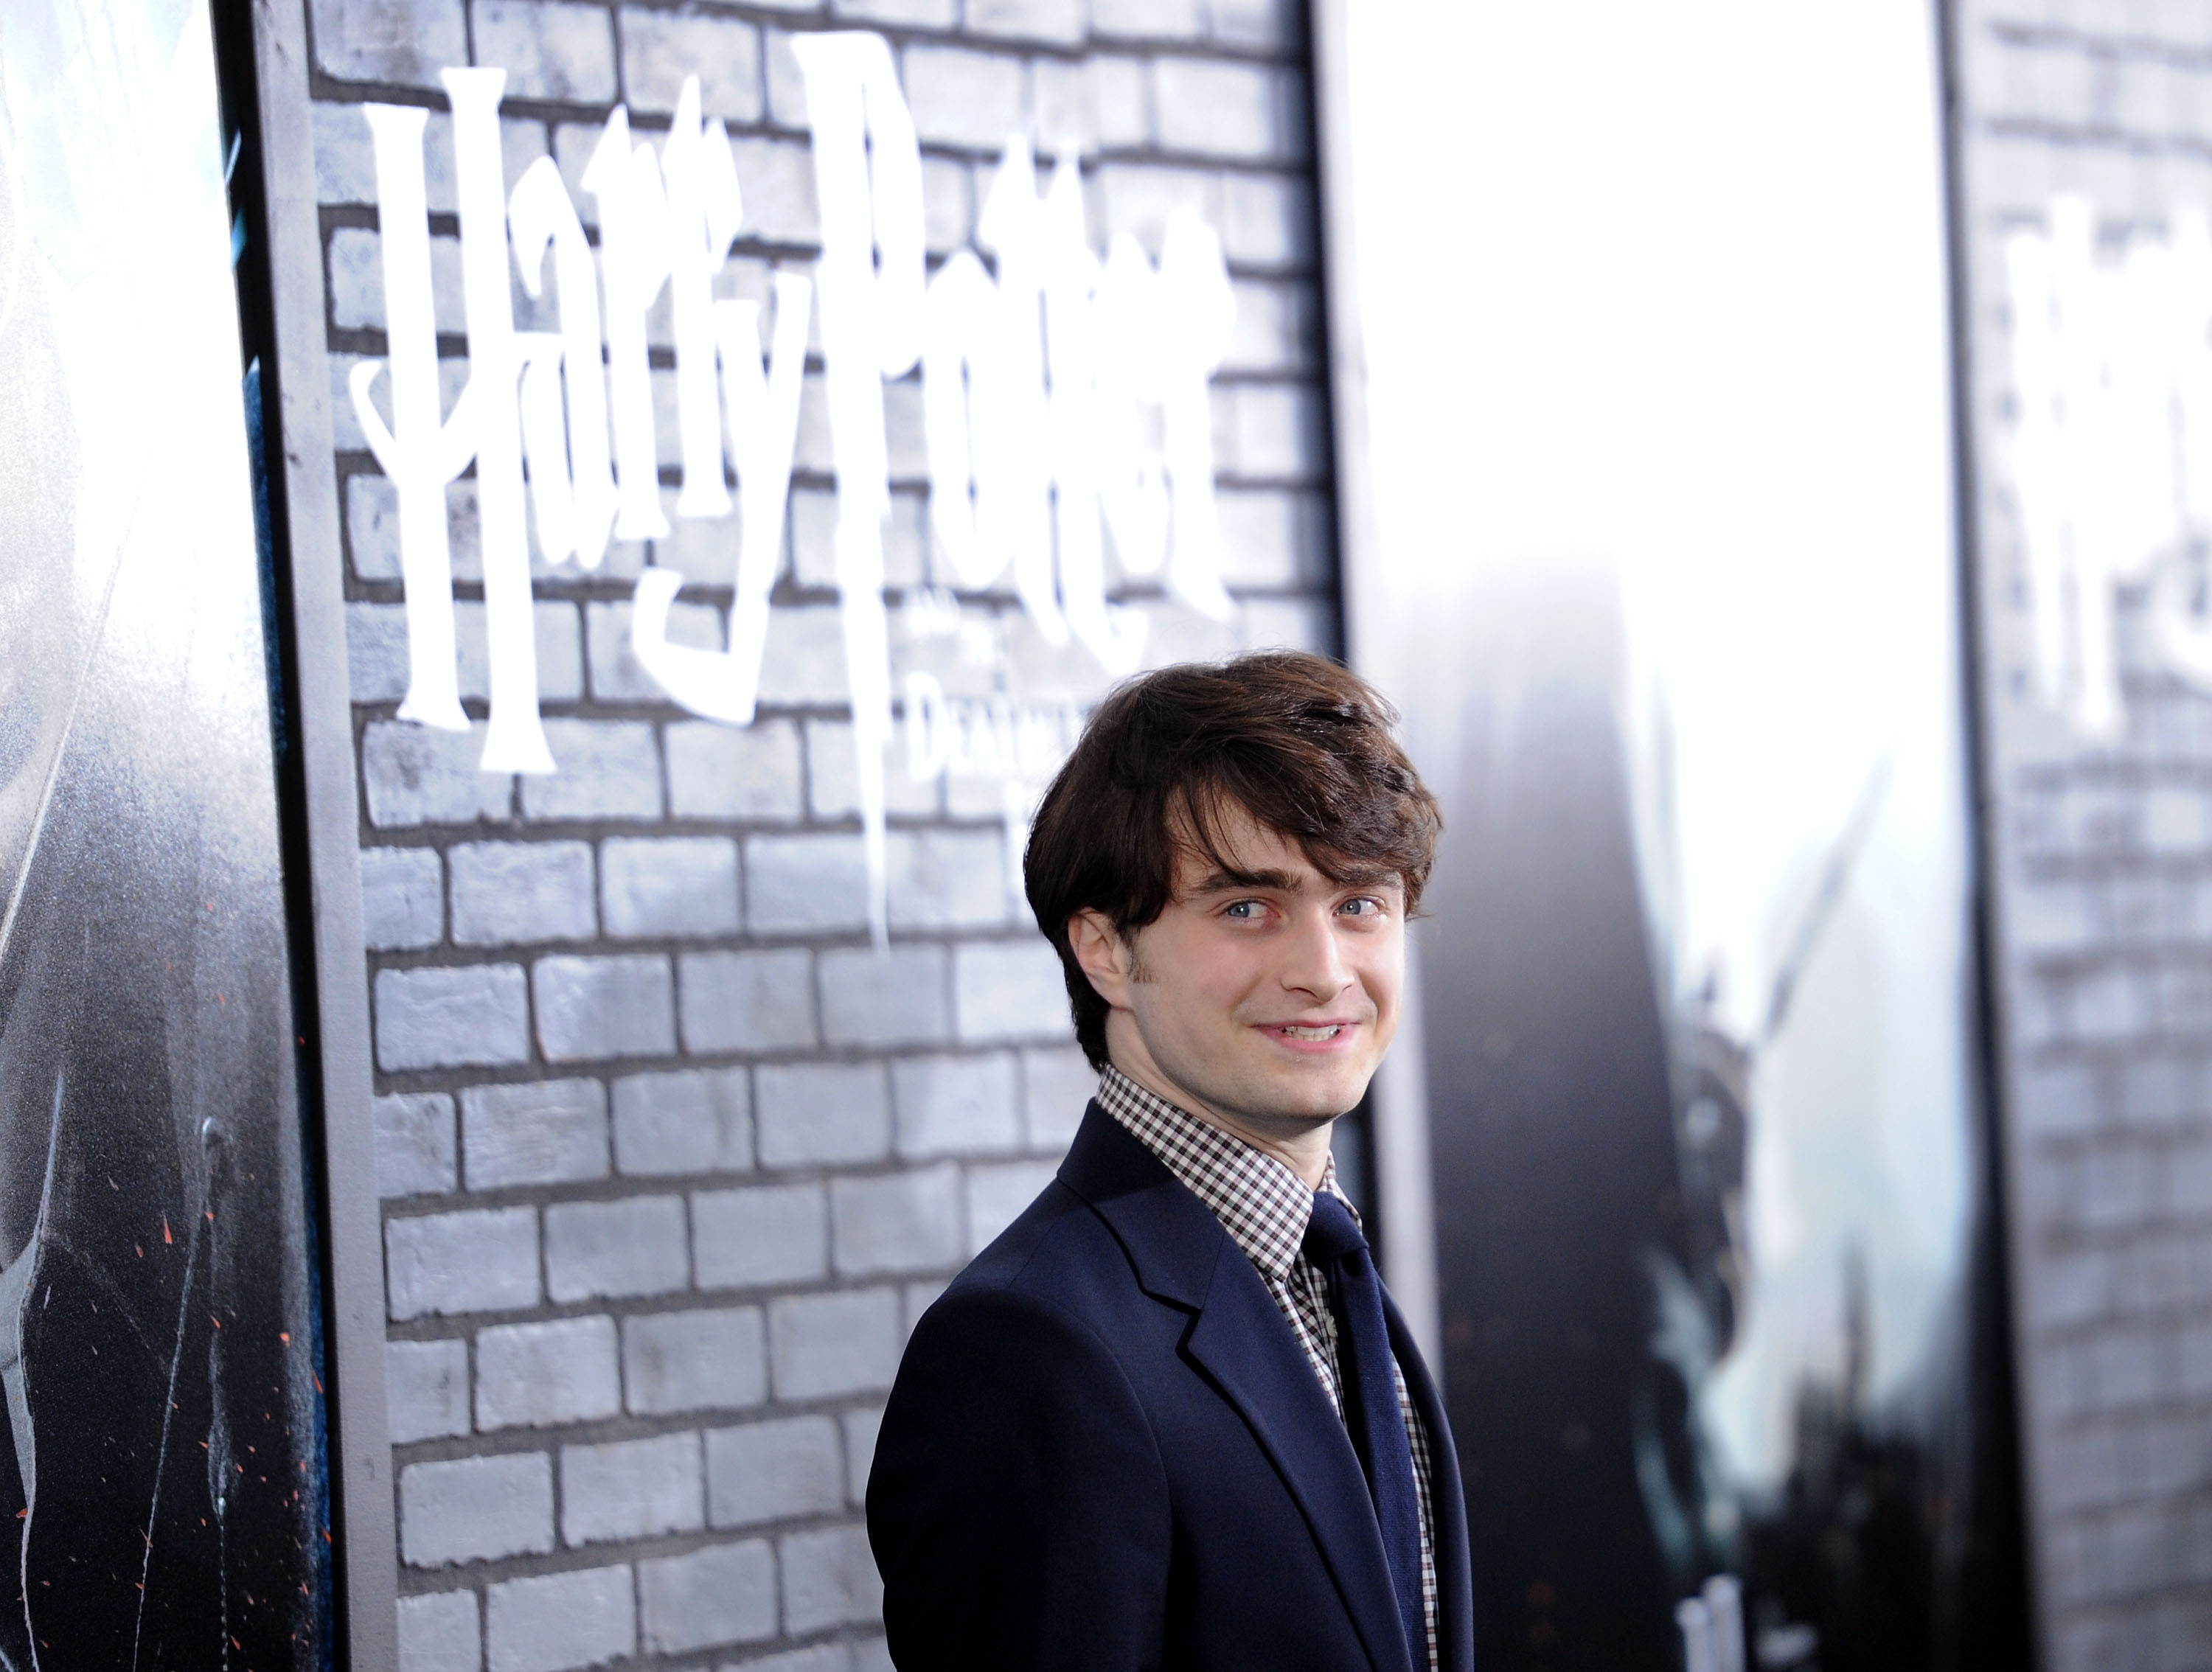 Голый Гарри Поттер вновь выступит на Бродвее > Новости на гей сайте BlueSystem